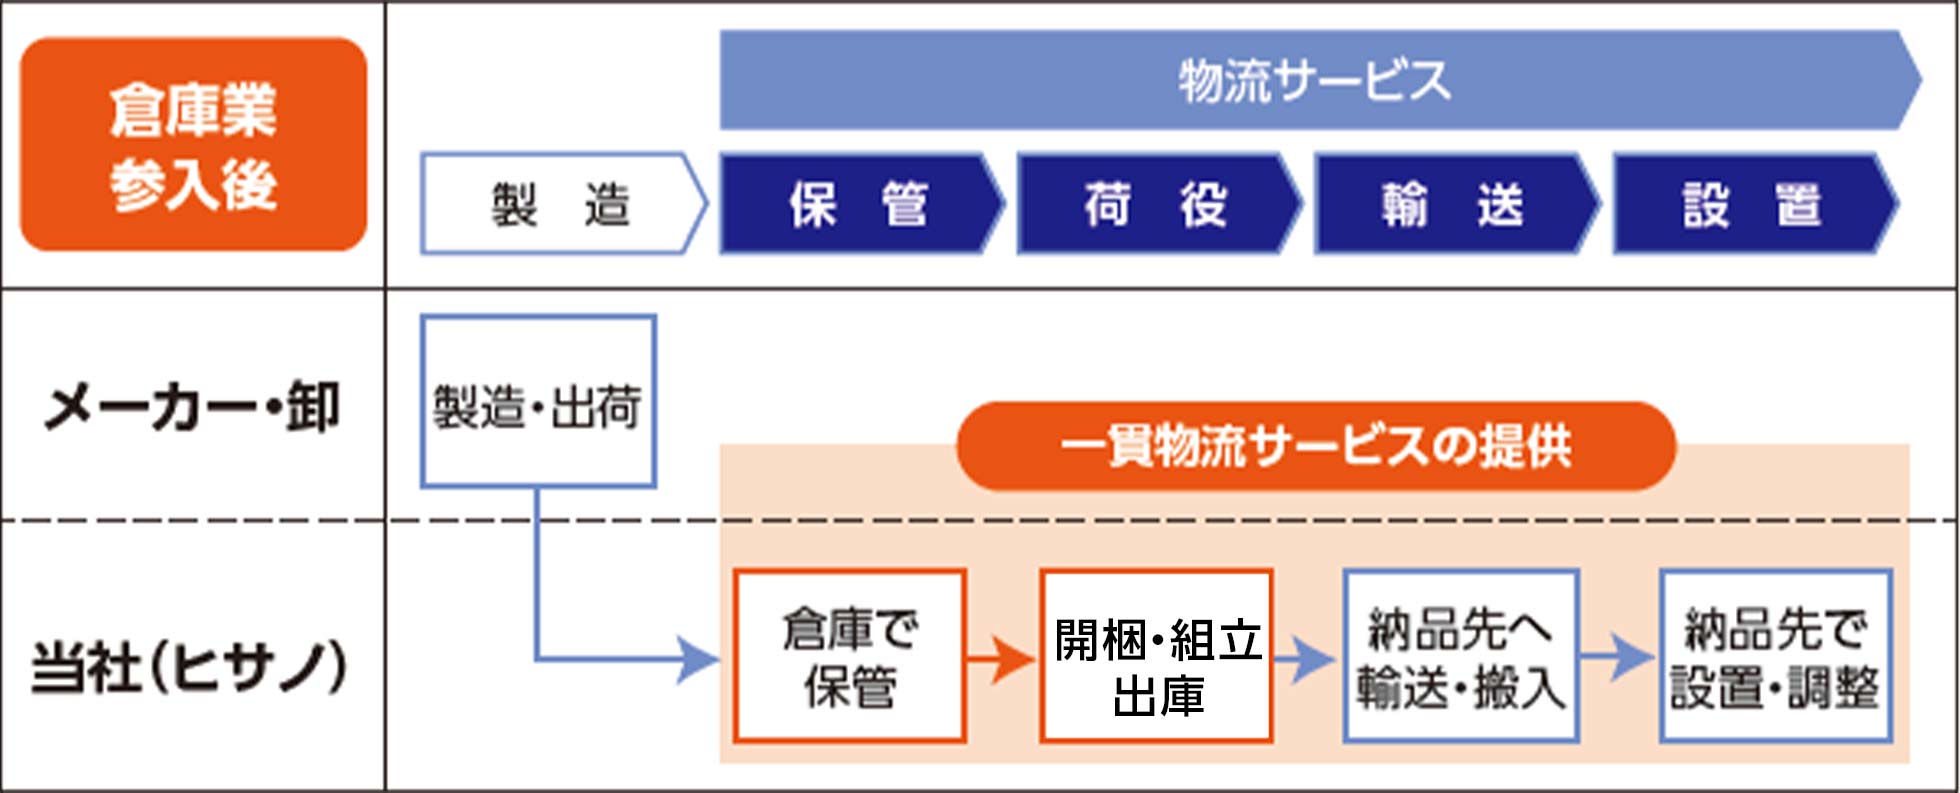 ヒサノの一貫物流サービス提供図